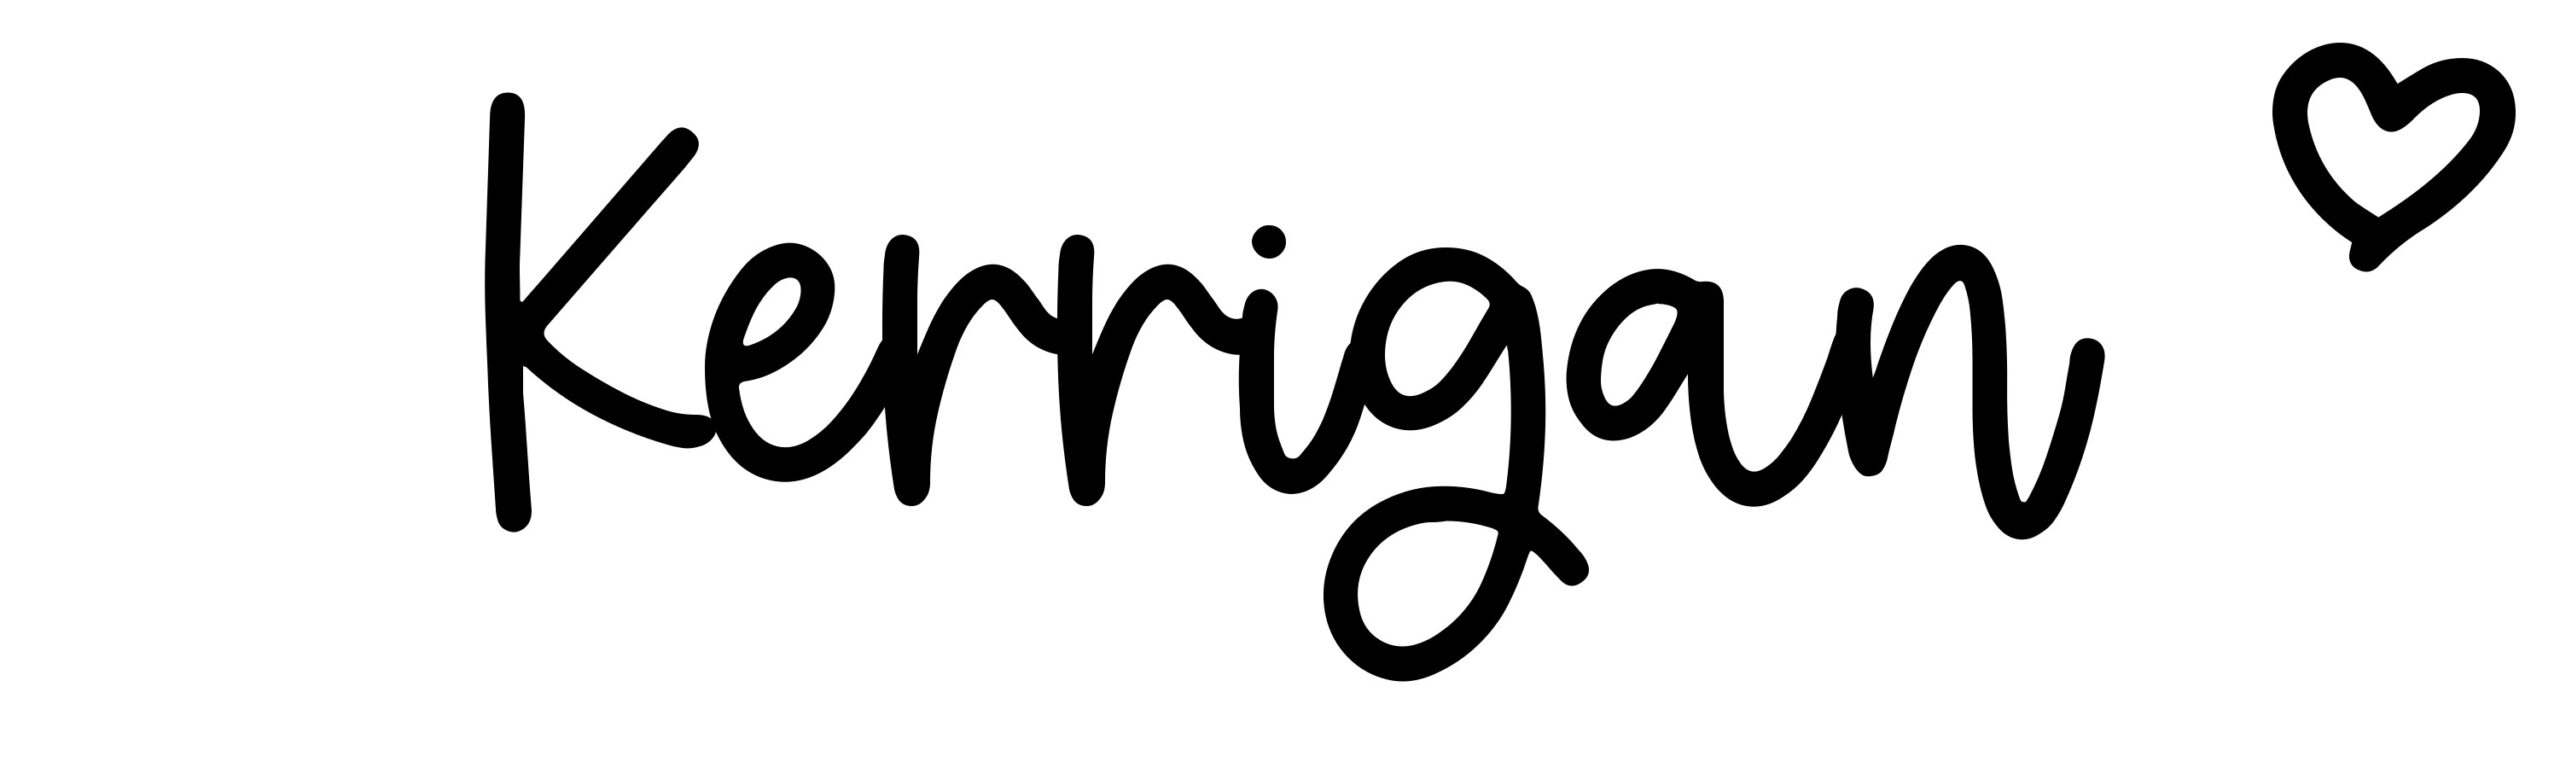 Kerrigan: Name meaning & origin at ClickBabyNames